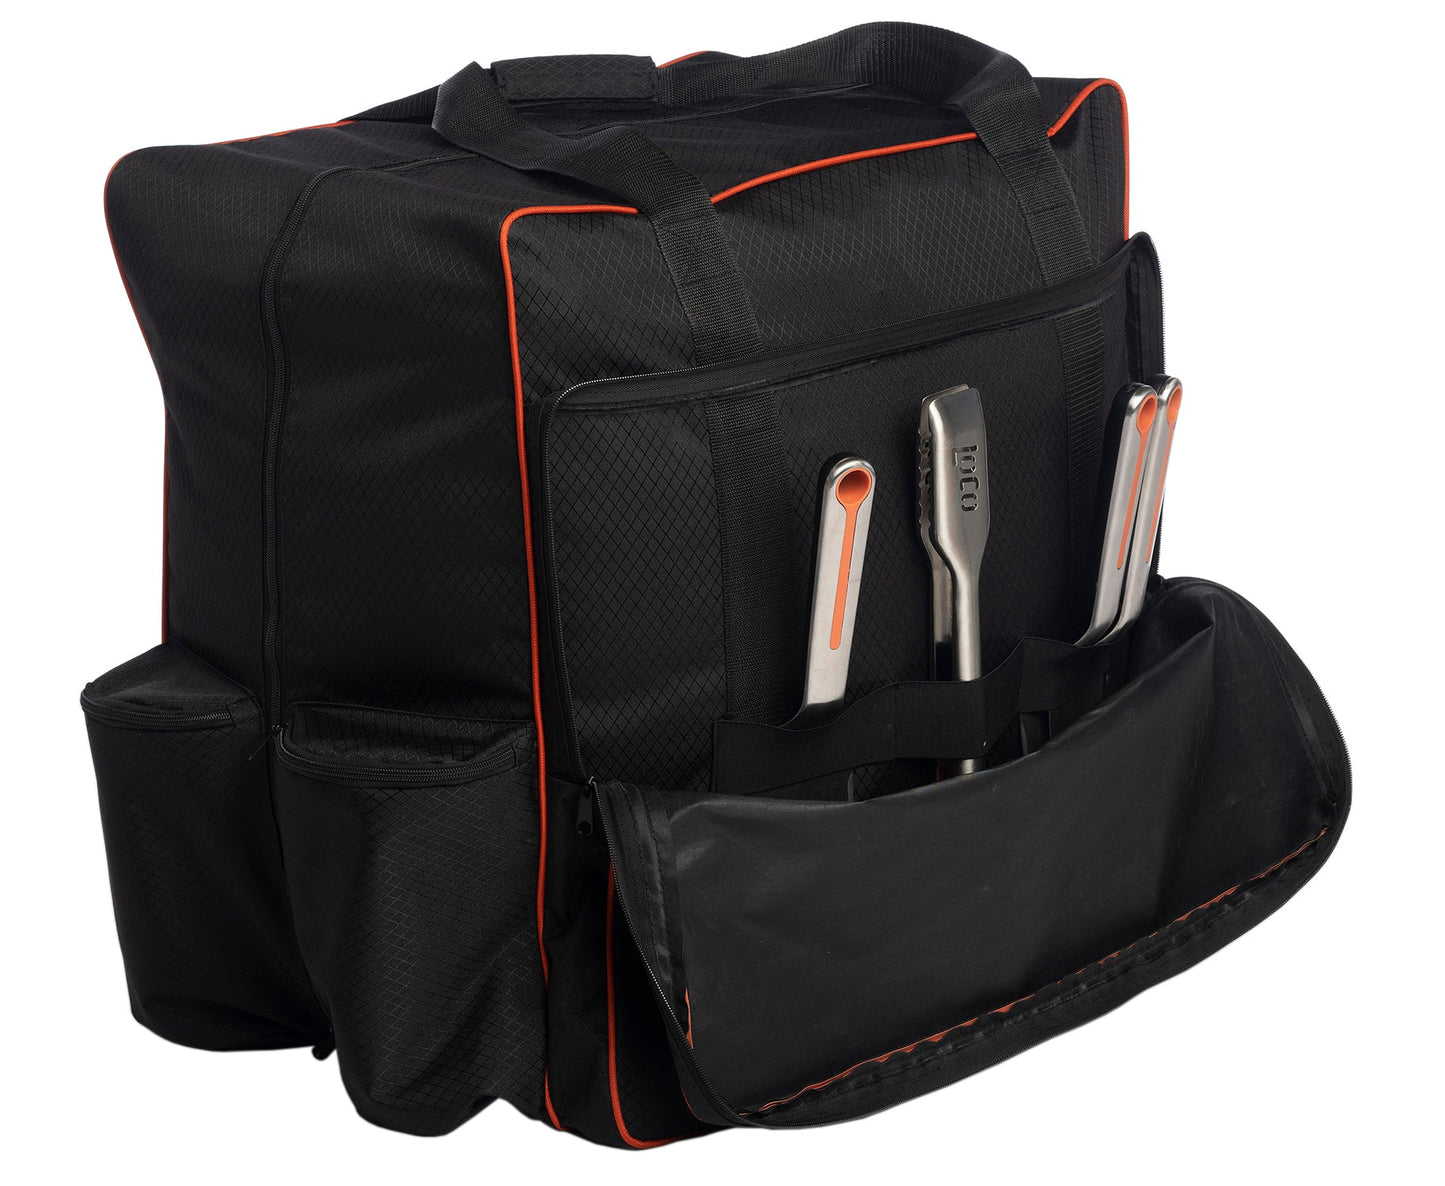 Tabletop Griddle Carry Bag